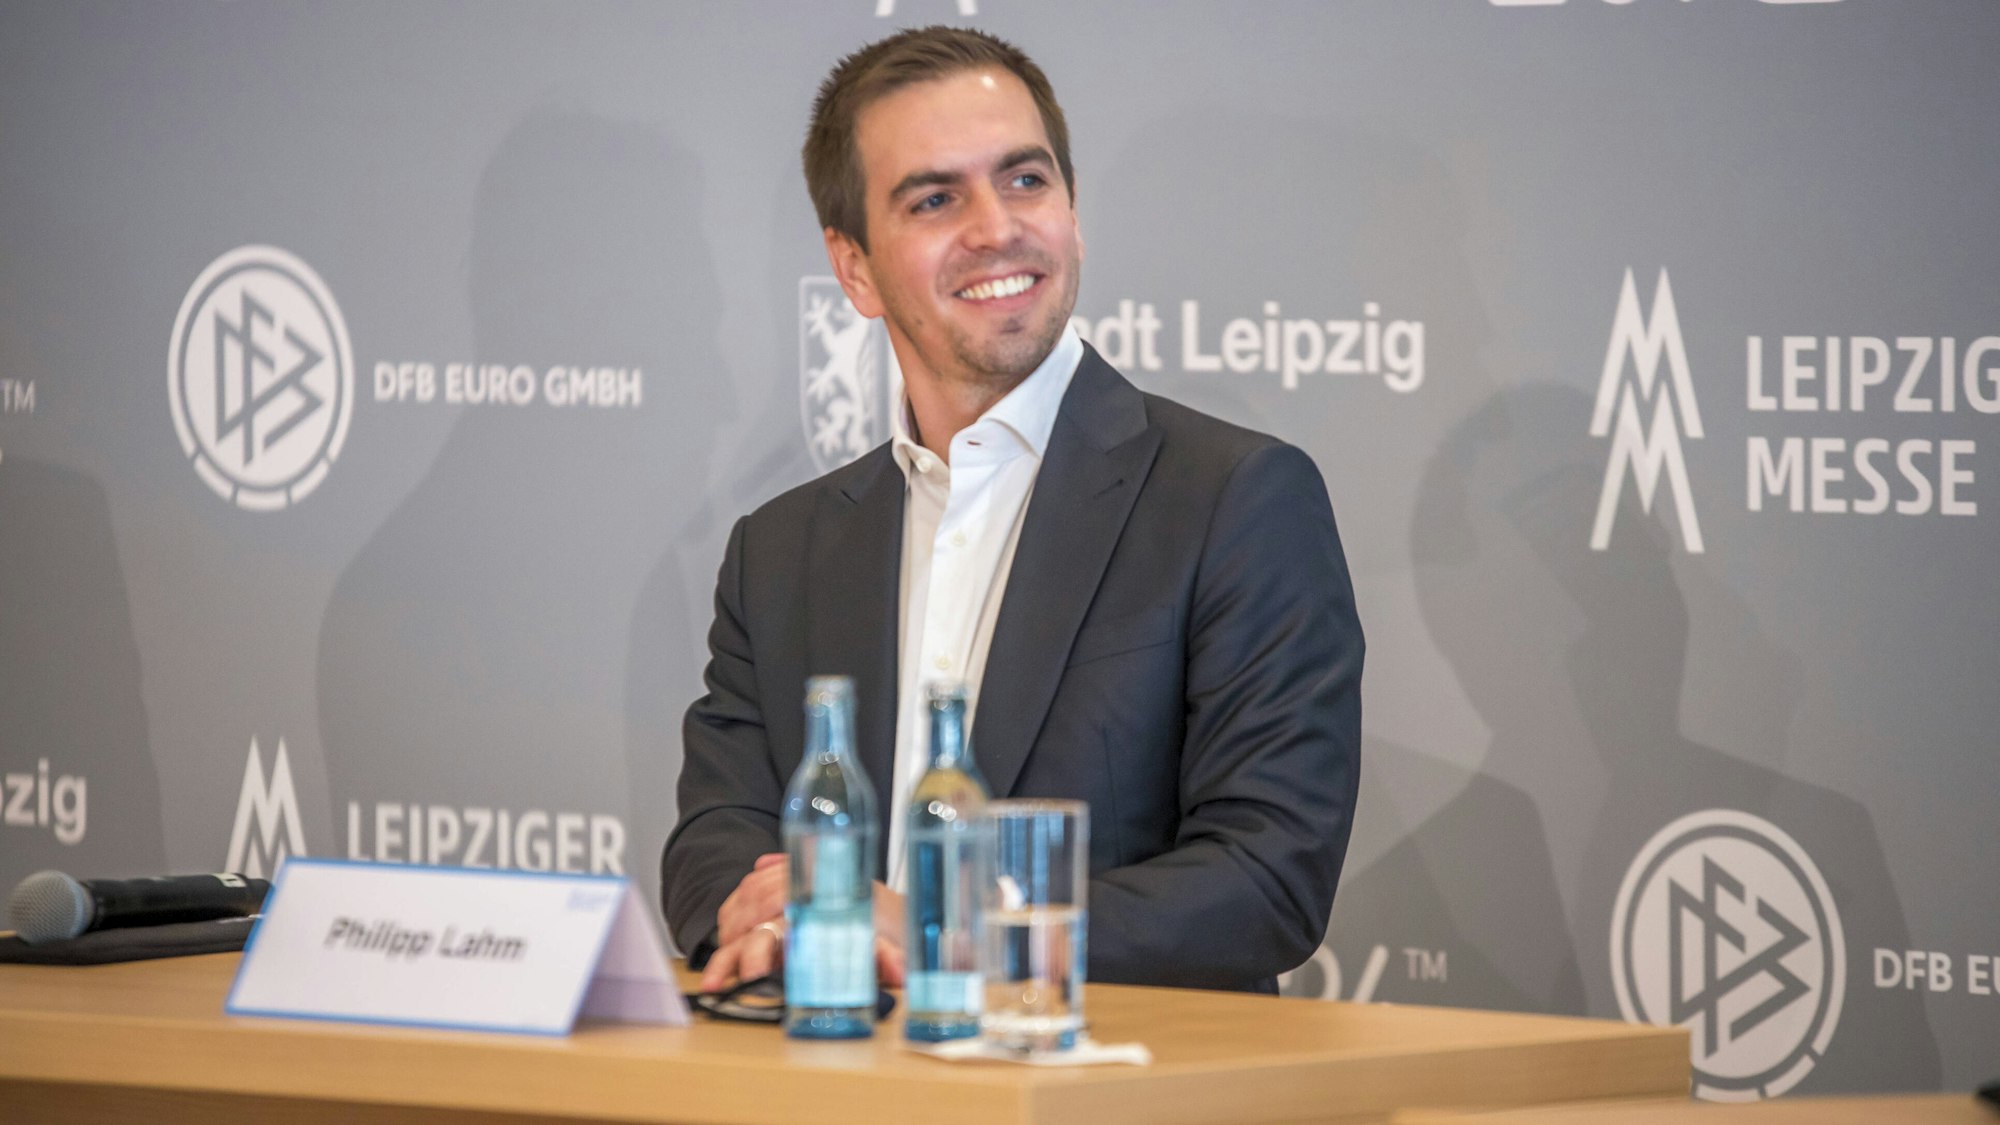 Philipp Lahm lacht bei einer Pressekonferenz zur EM 2024.